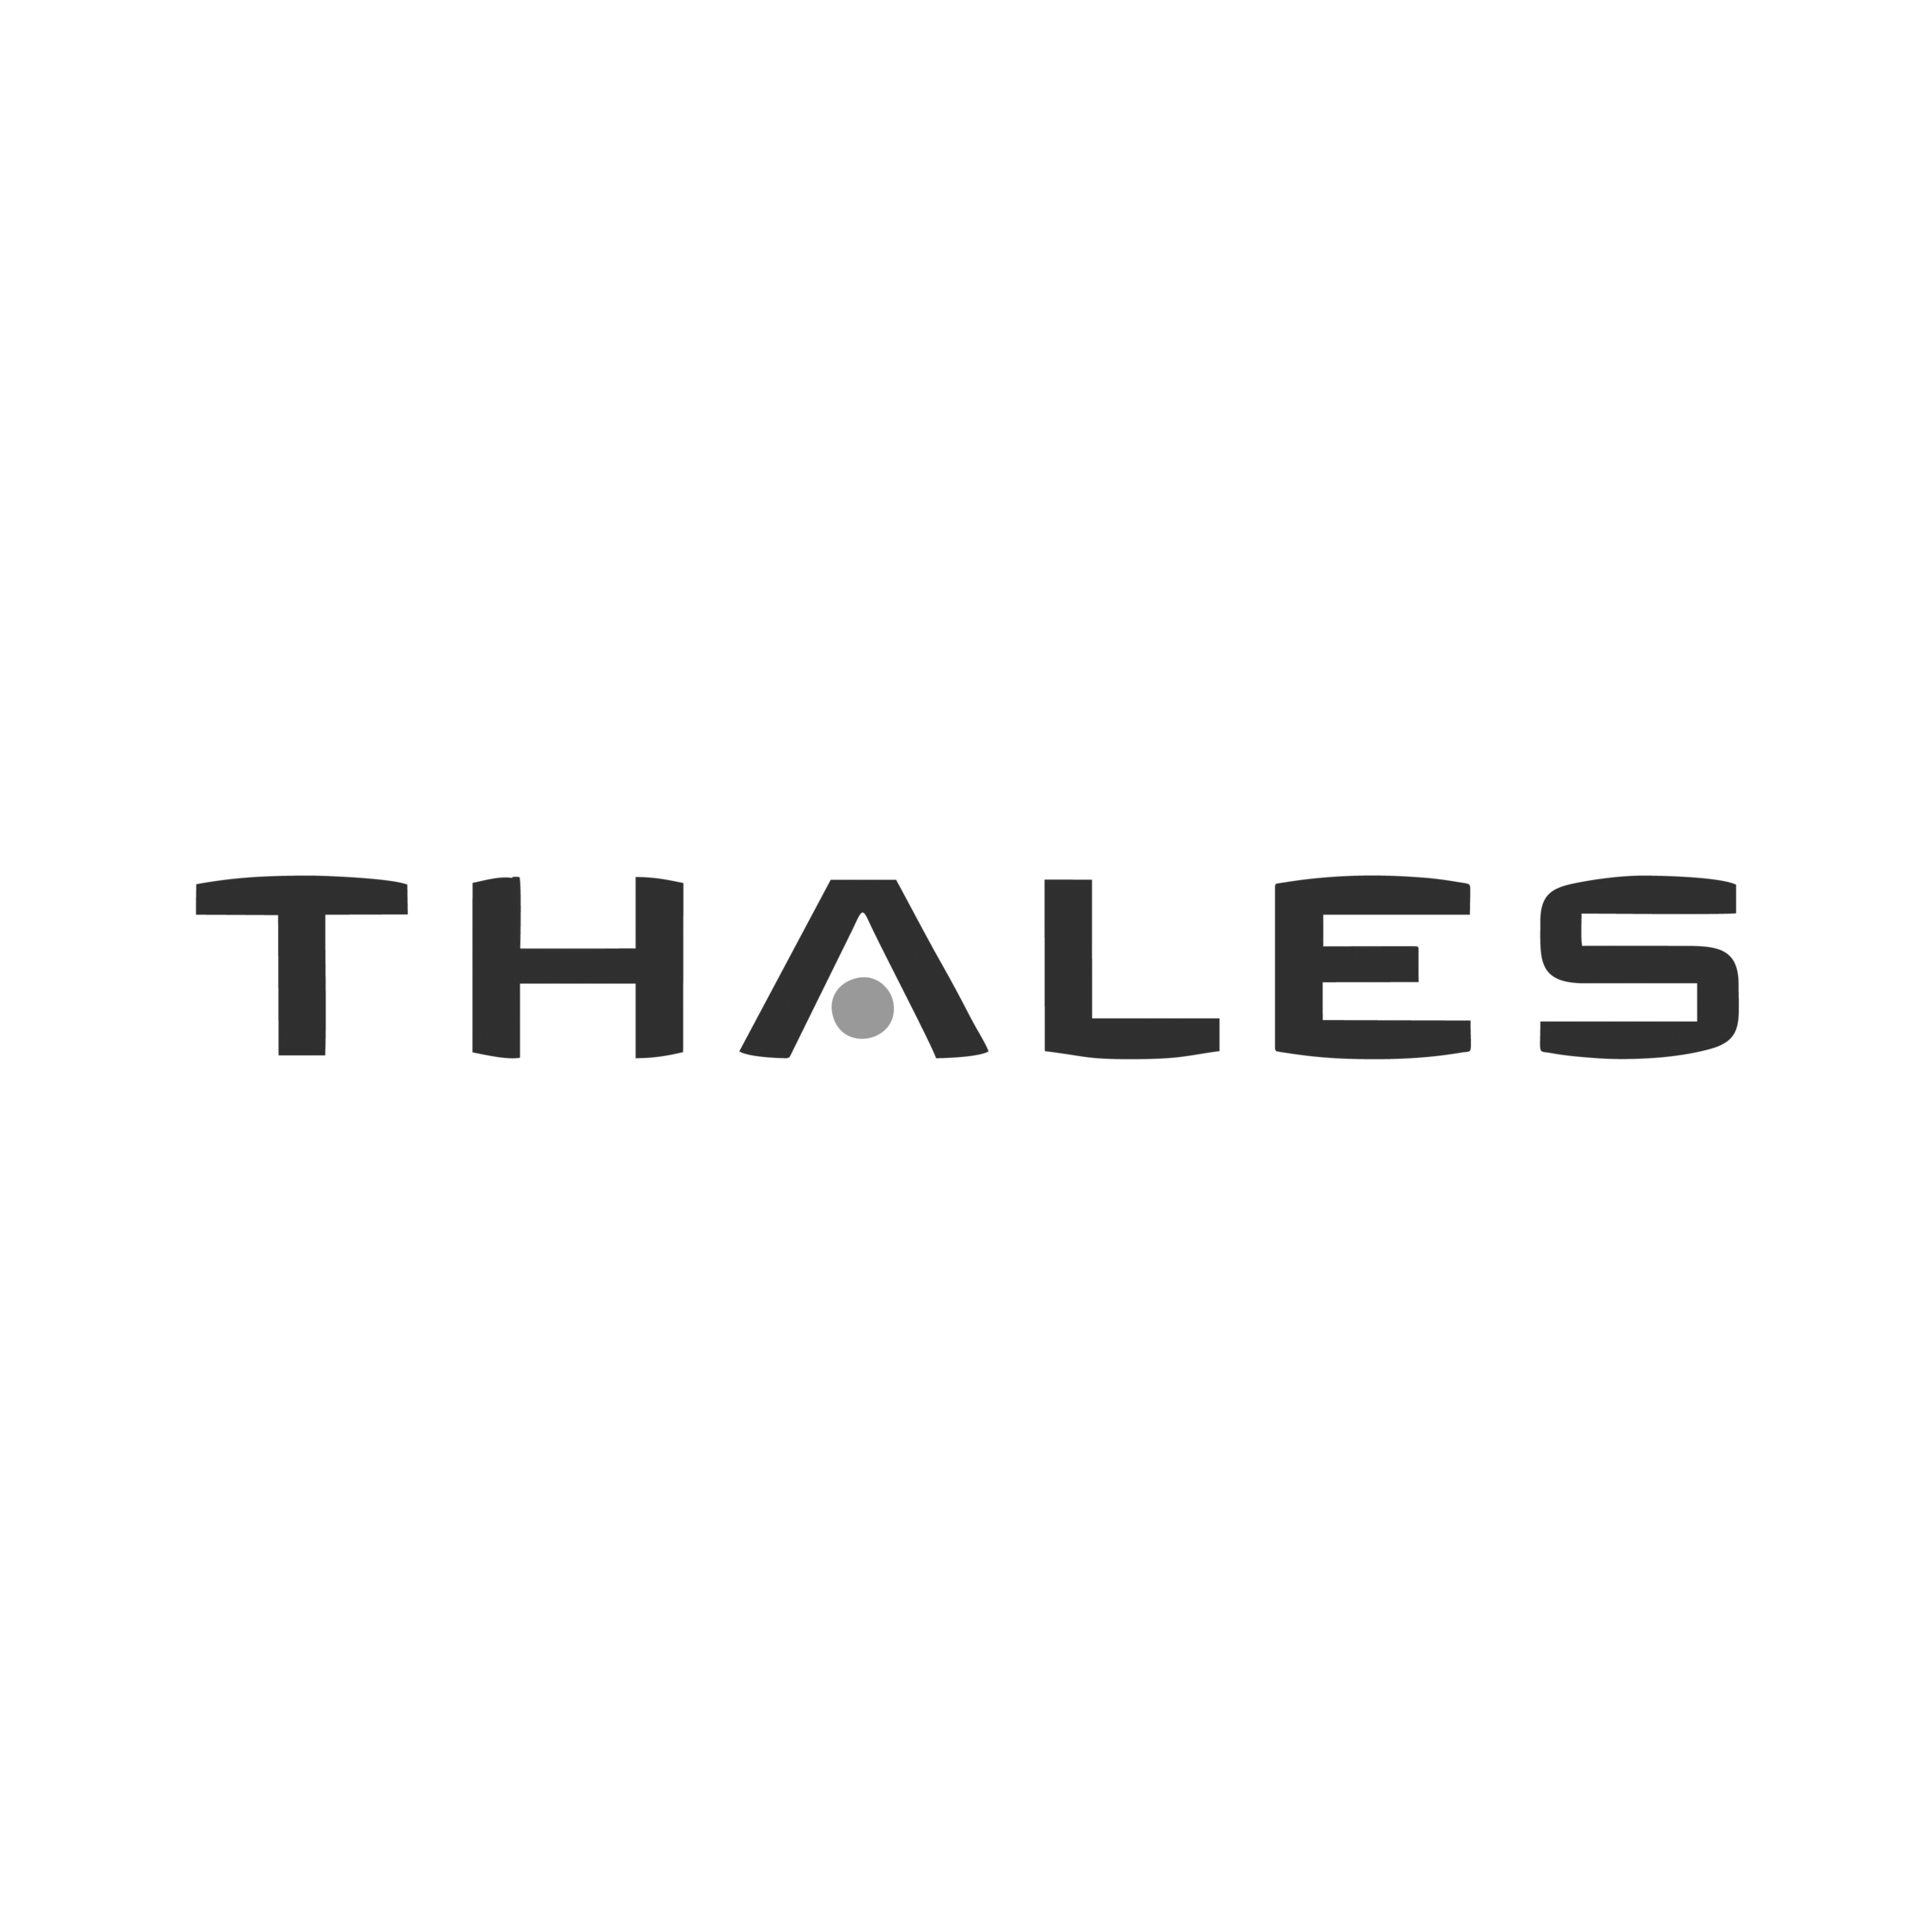 Logo THALES